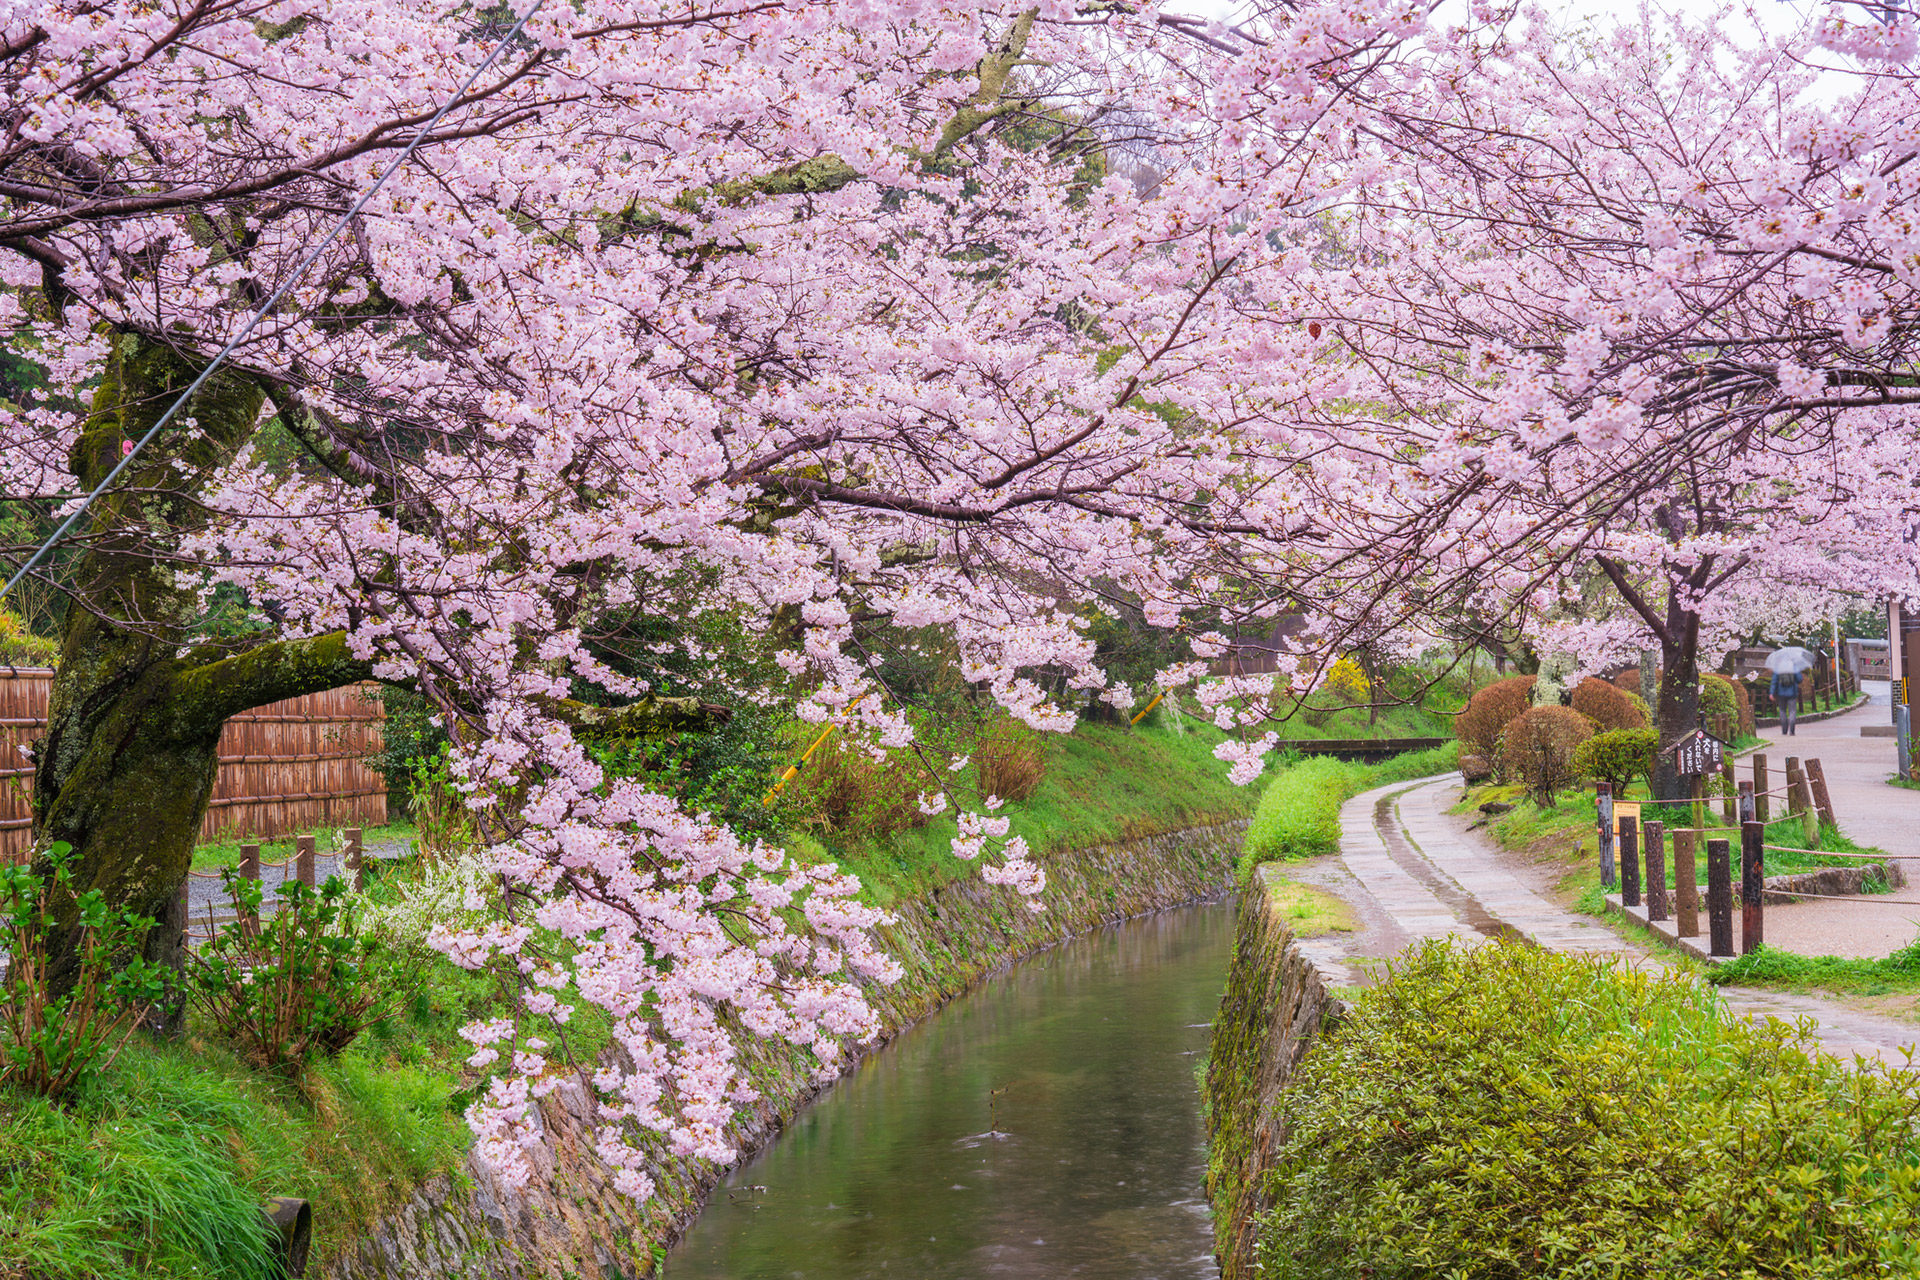 京都の中でも美しい桜のトンネルをご存知でしょうか Caedekyoto カエデ京都 紅葉と伝統美を引き継ぐバッグ